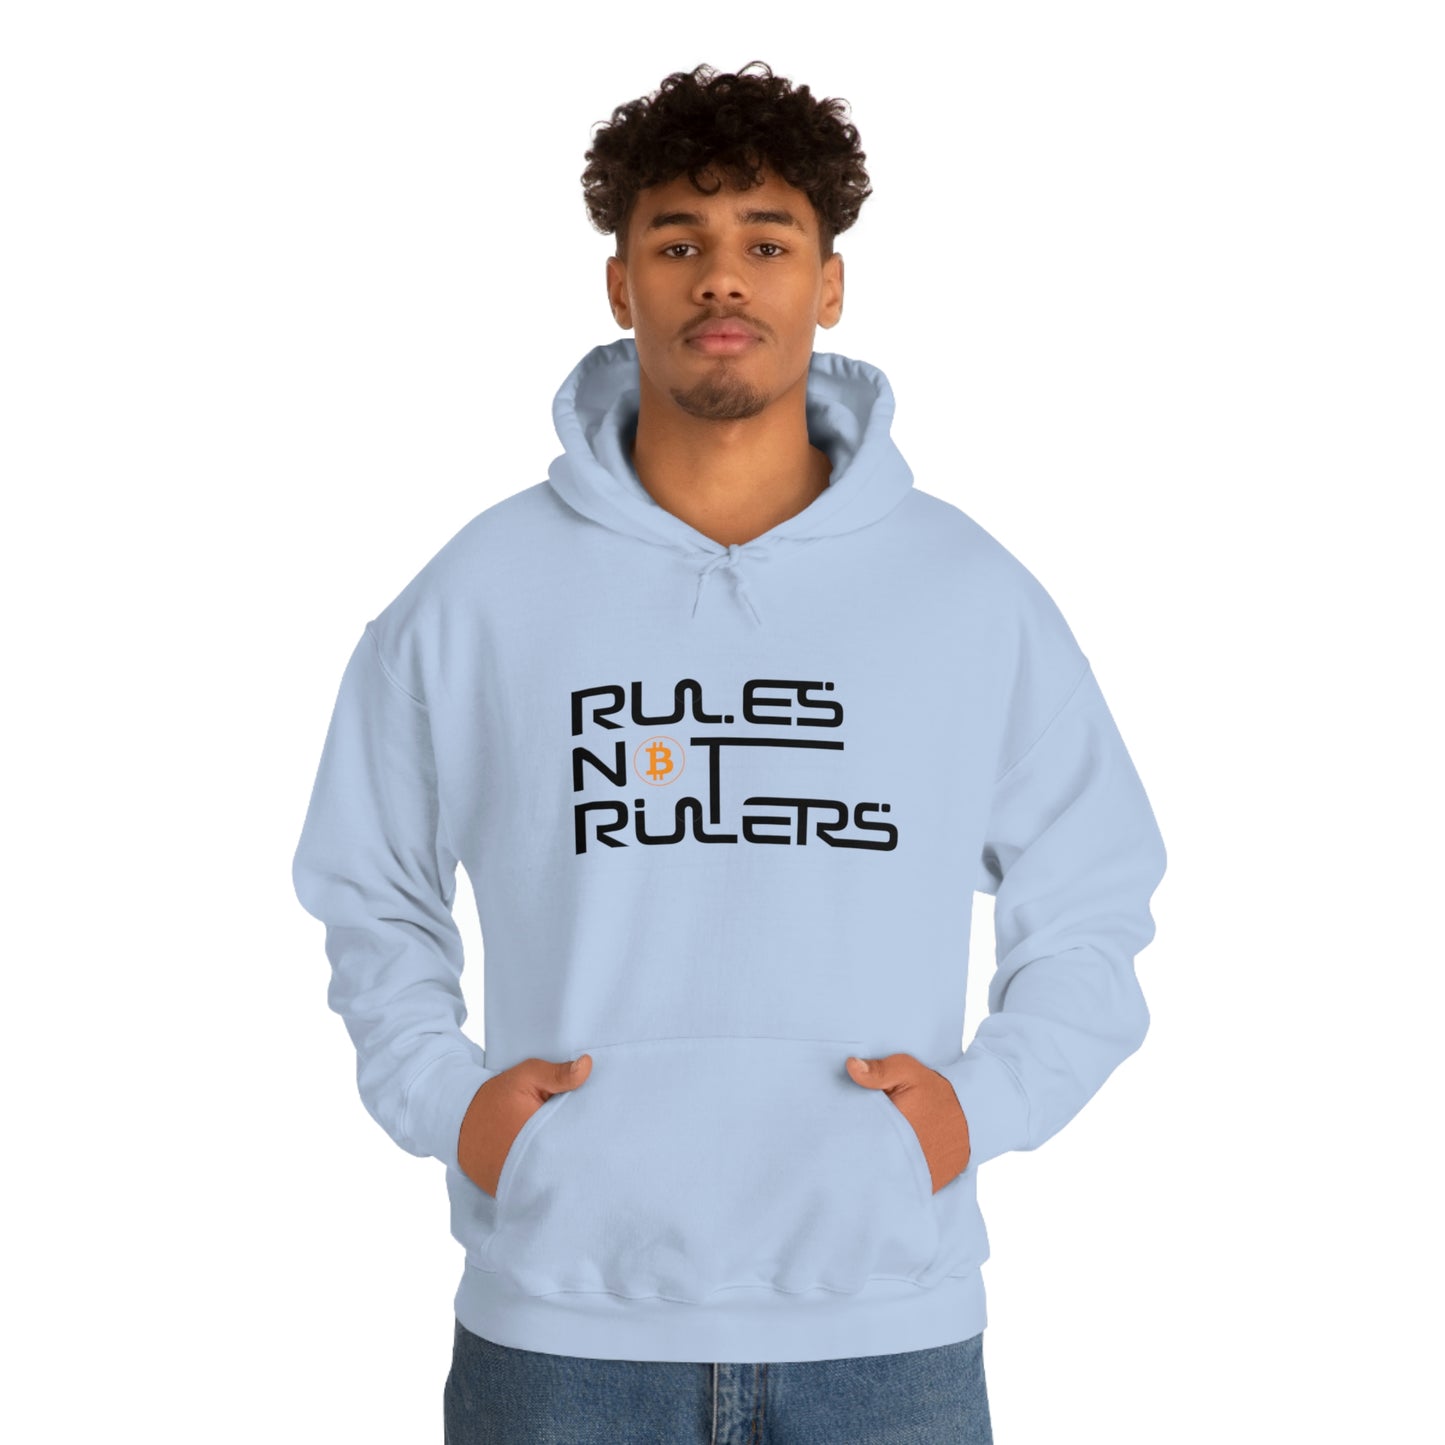 Rules Not Rulers Hooded Sweatshirt